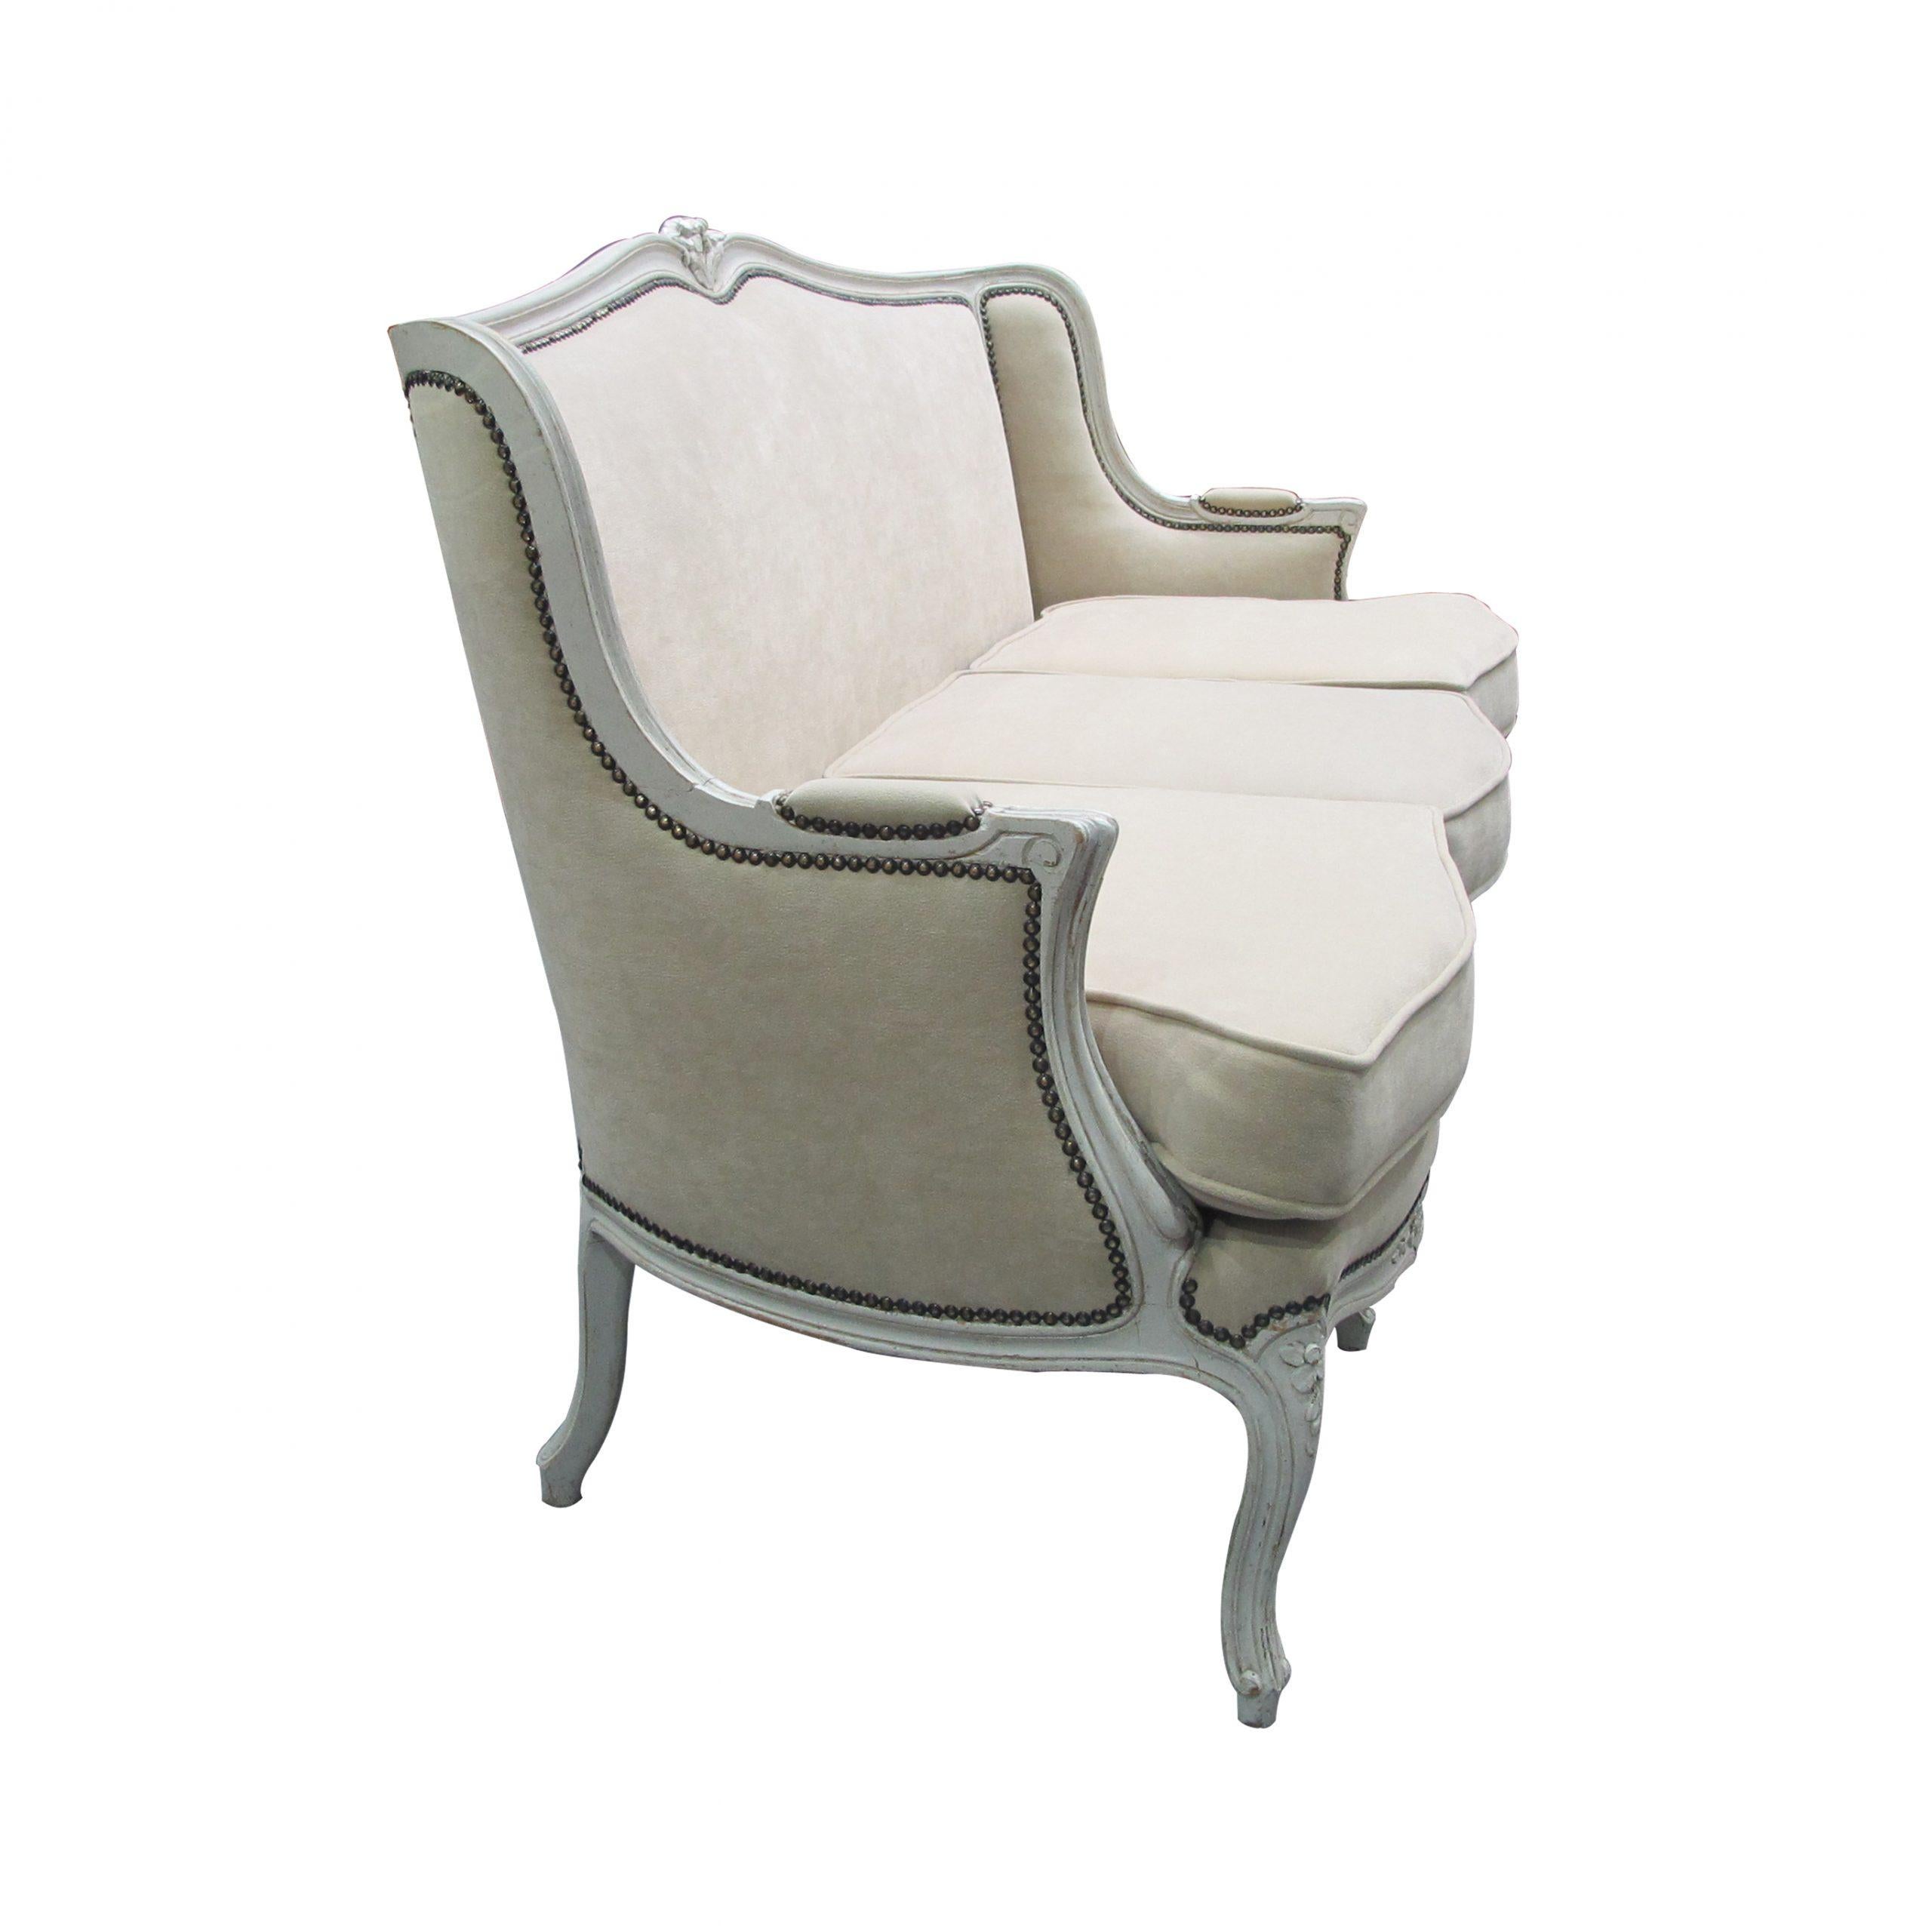 Très beau canapé français 3(three) avec 3 coussins d'assise, circa 1900, nouvellement tapissé d'un tissu couleur lin, très résistant et facile d'entretien.  Le cadre et les élégants pieds à enroulement sont peints dans une couleur gris